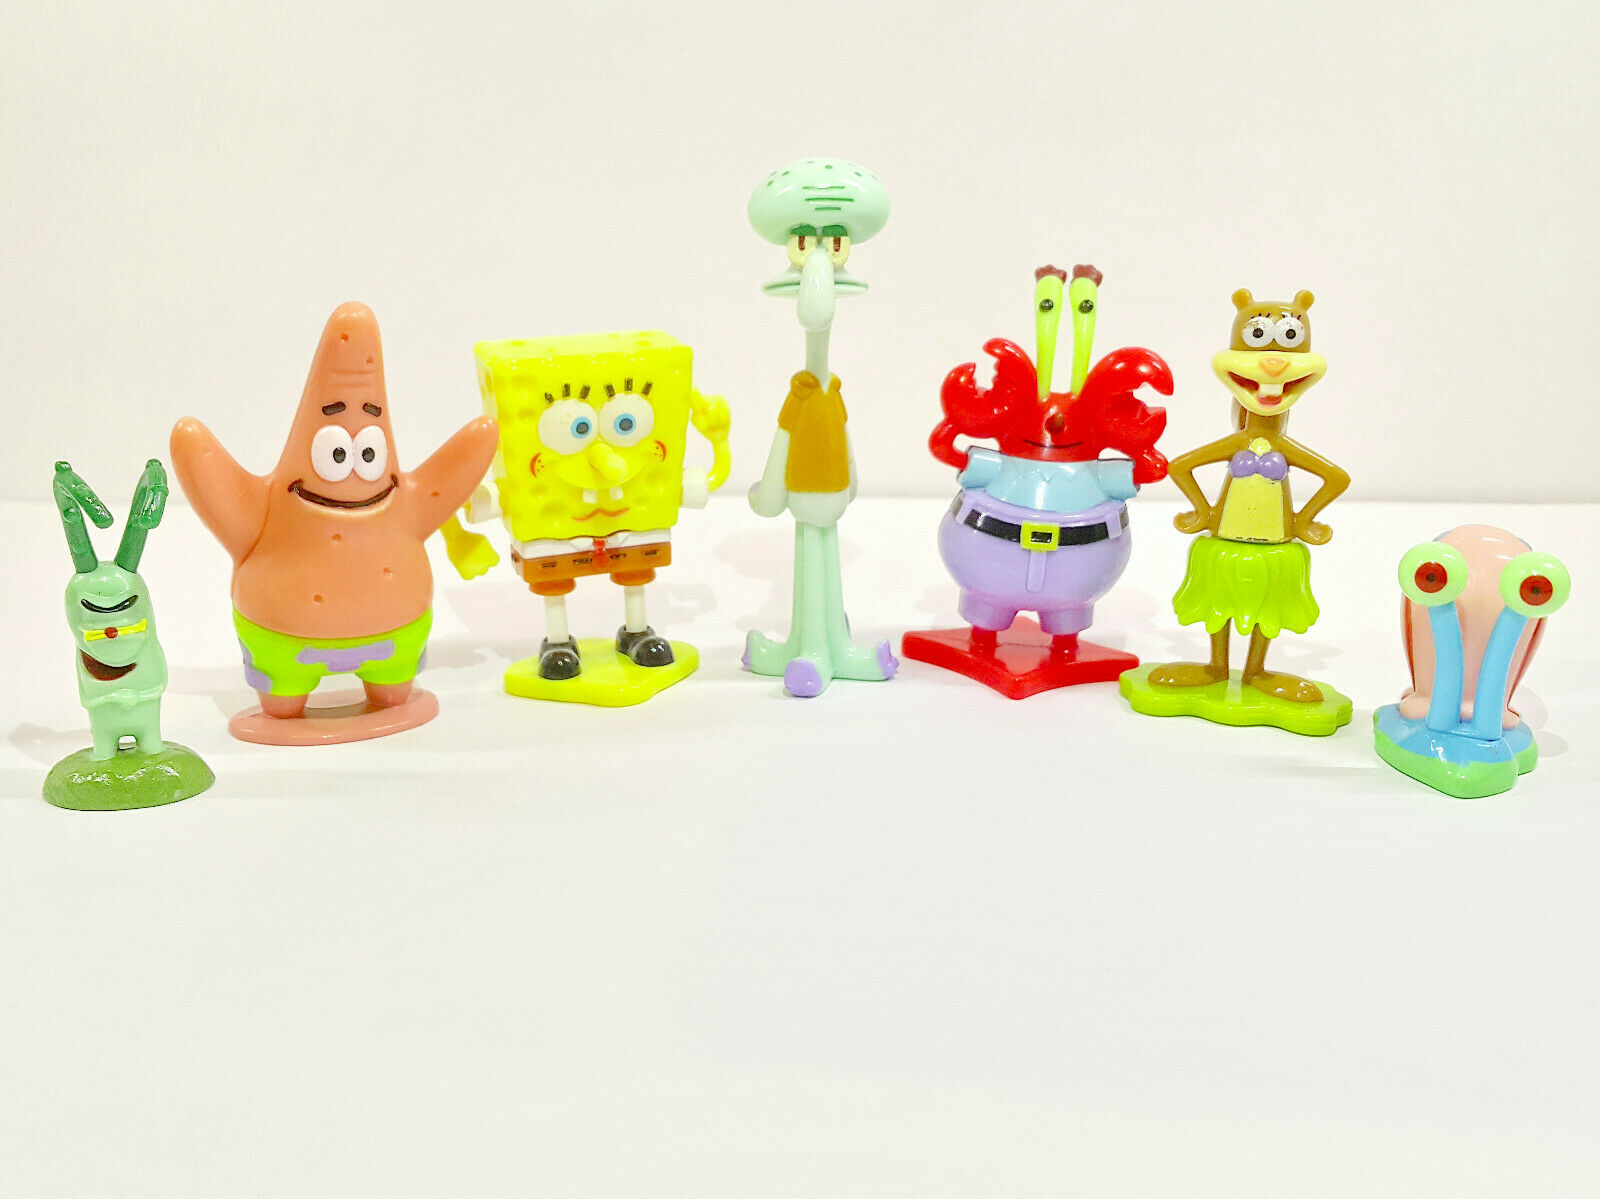 Spongebob Complete Set. Kinder Surprise 2012. Full Set. 7 Toys